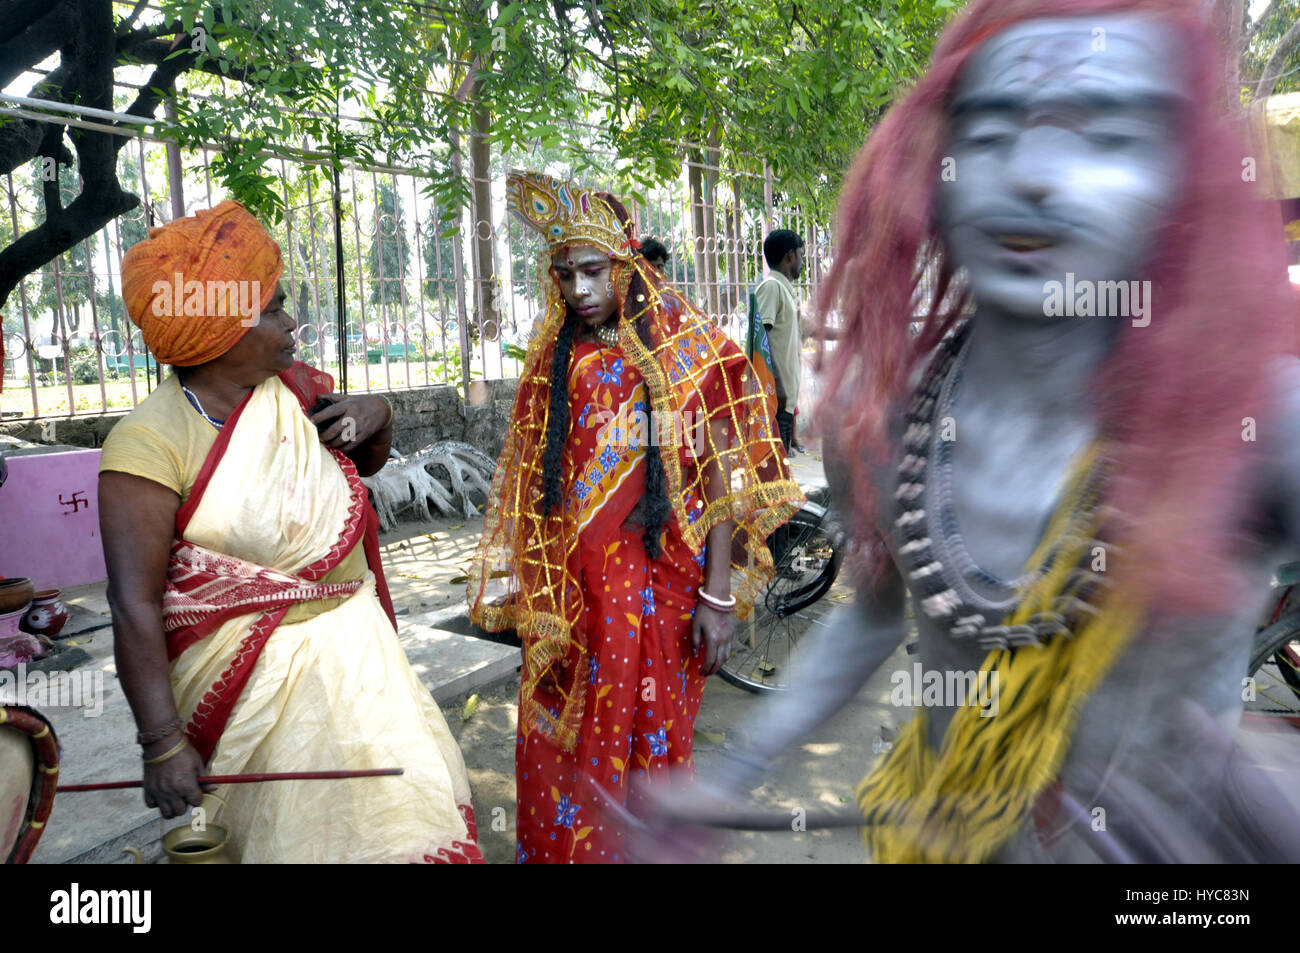 India : Gajan Festival - 21/03/2014 - India / Tripura / Agartala - persone vestite come dio Shiva e Godess Gouri, ballare dopo aver tenuto canabbies in Agartala, capitale del nord-est stato di Tripura. Questa è una parte del Festival Gajan, un Folk Festival dell India. Gajan è un festival indù celebrata principalmente nello stato indiano del Bengala Occidentale. Esso è associato a tale divinità come Shiva, Neel e Dharmathakur. Gajan abbraccia circa una settimana, s Foto Stock